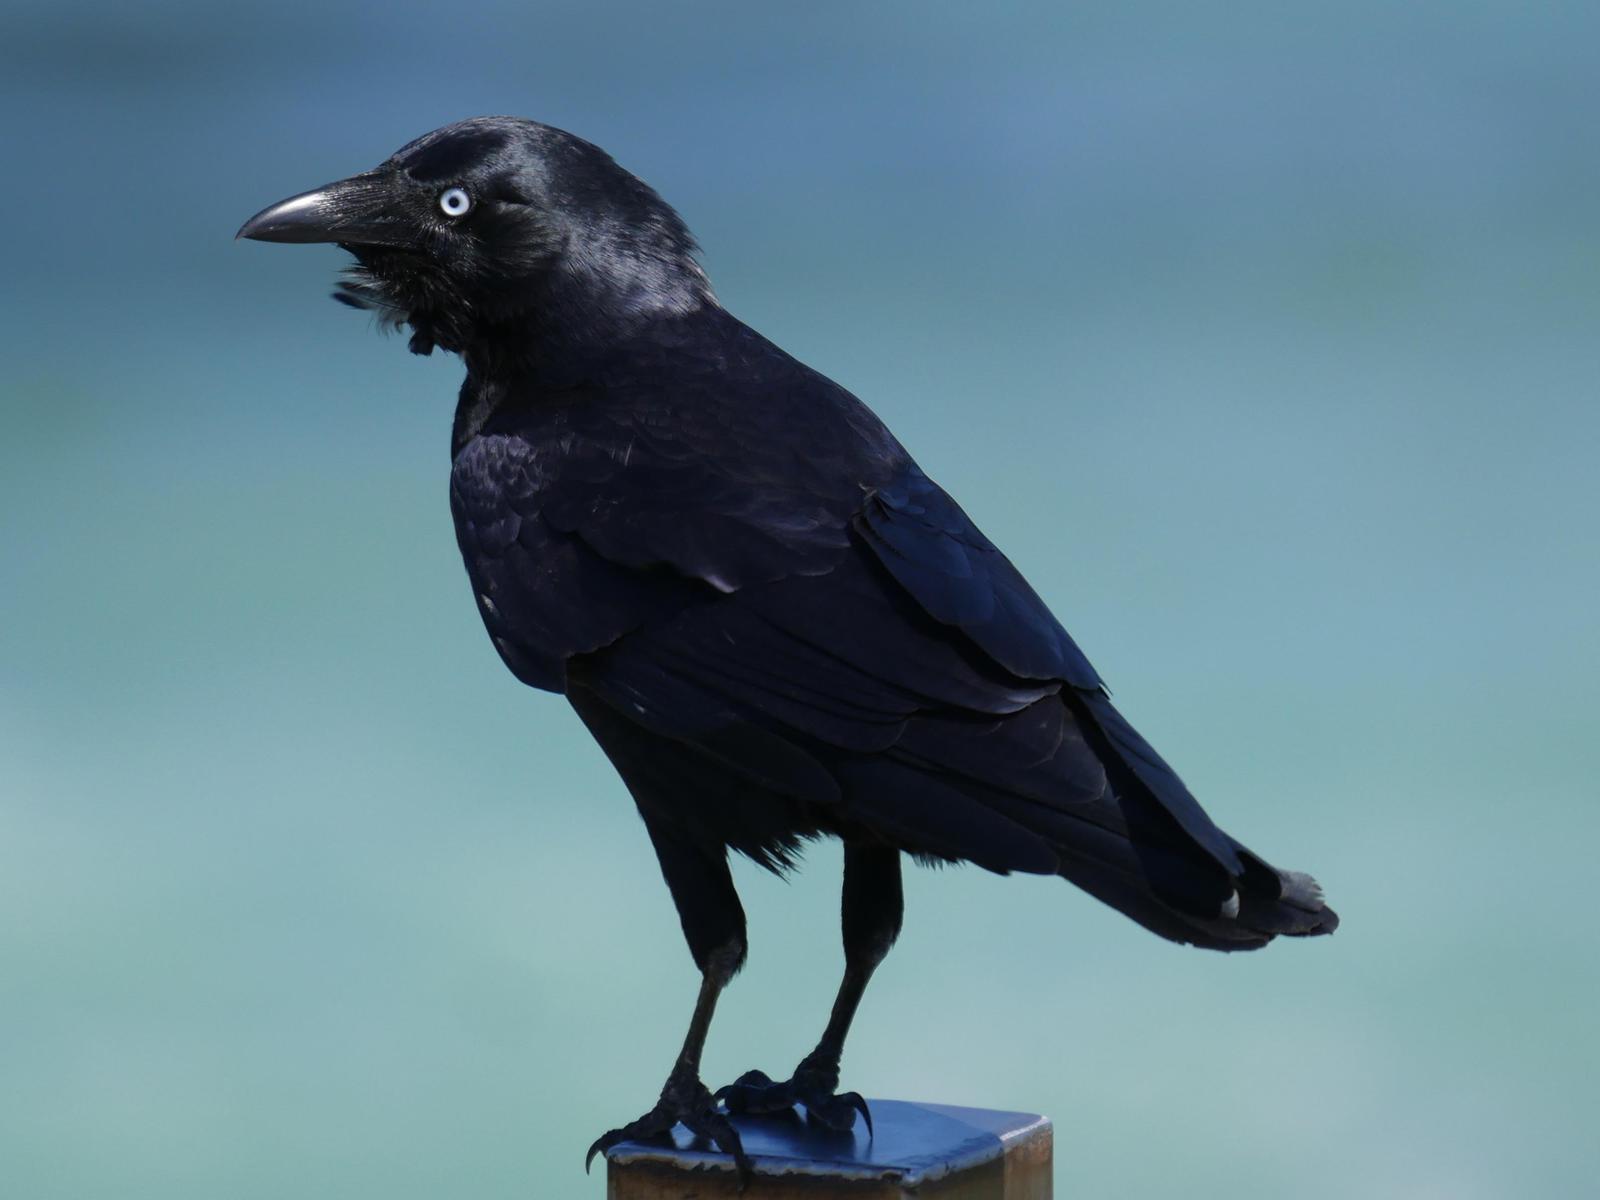 Australian Raven Photo by Peter Lowe